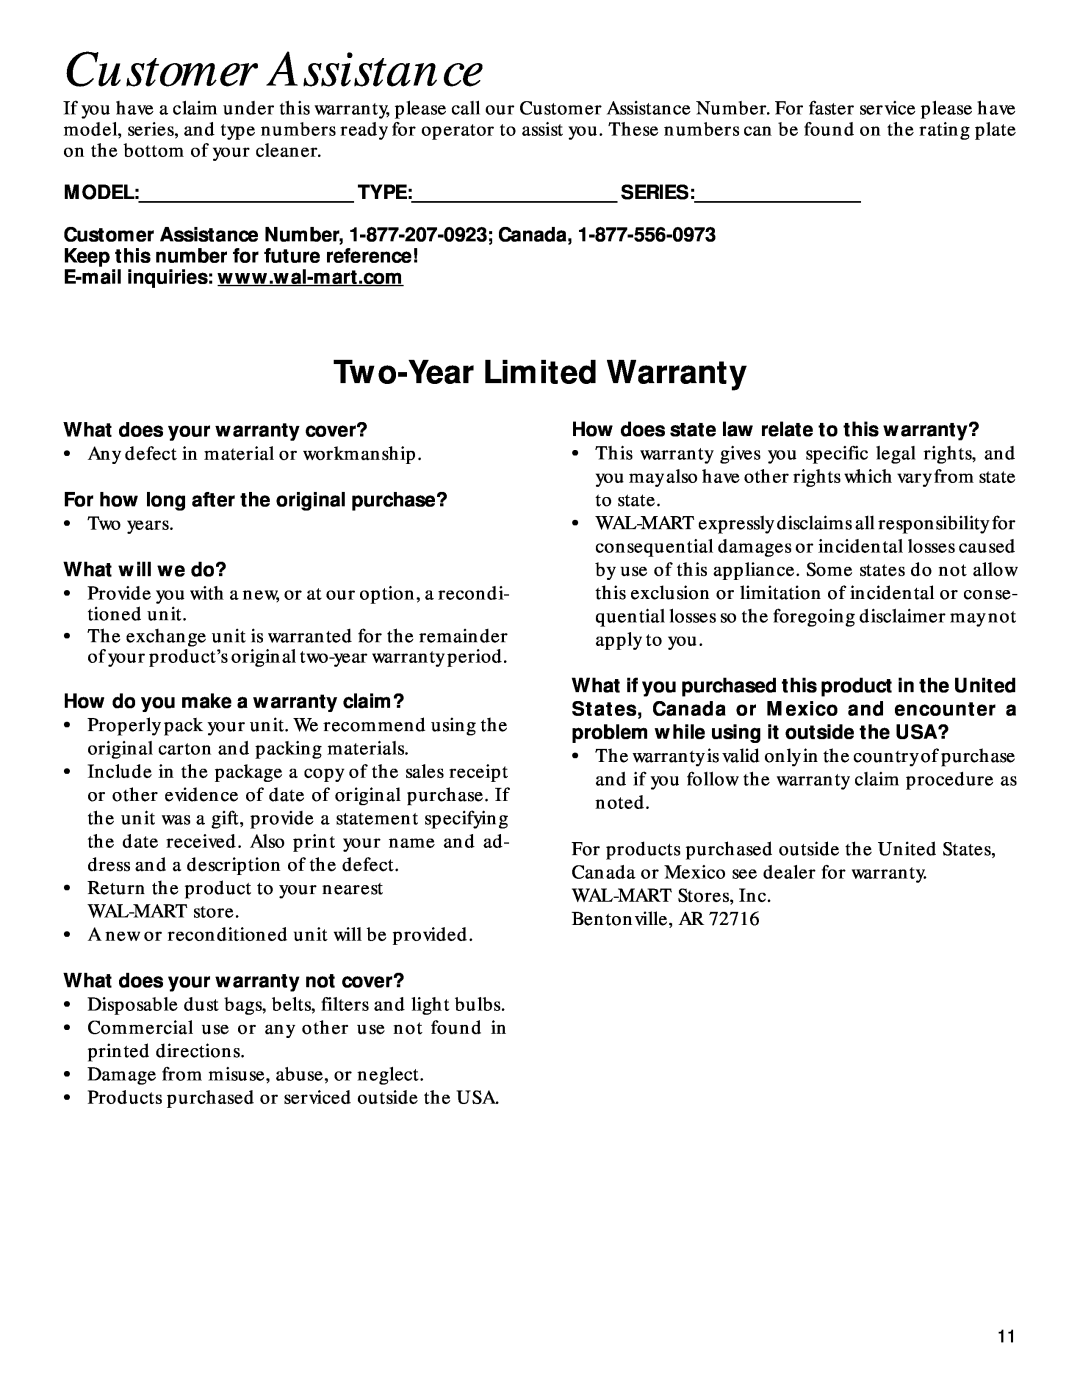 GE 71337, 106687 warranty Customer Assistance, Two-YearLimited Warranty 